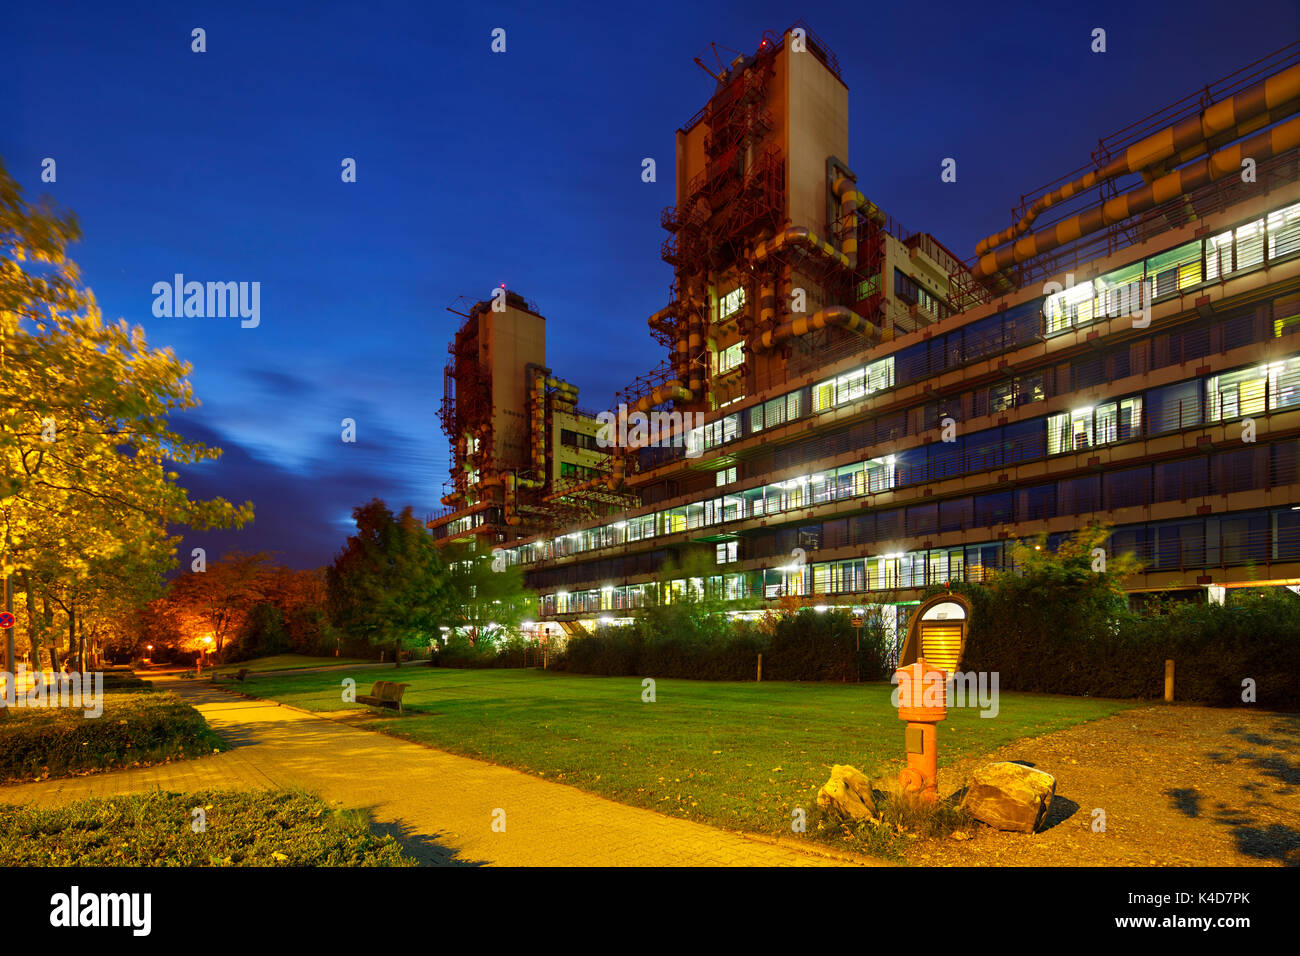 La moderna clinica universitaria di Aachen, Germania con night blue sky. prospettiva corretti mediante spostamento della lente. Foto Stock